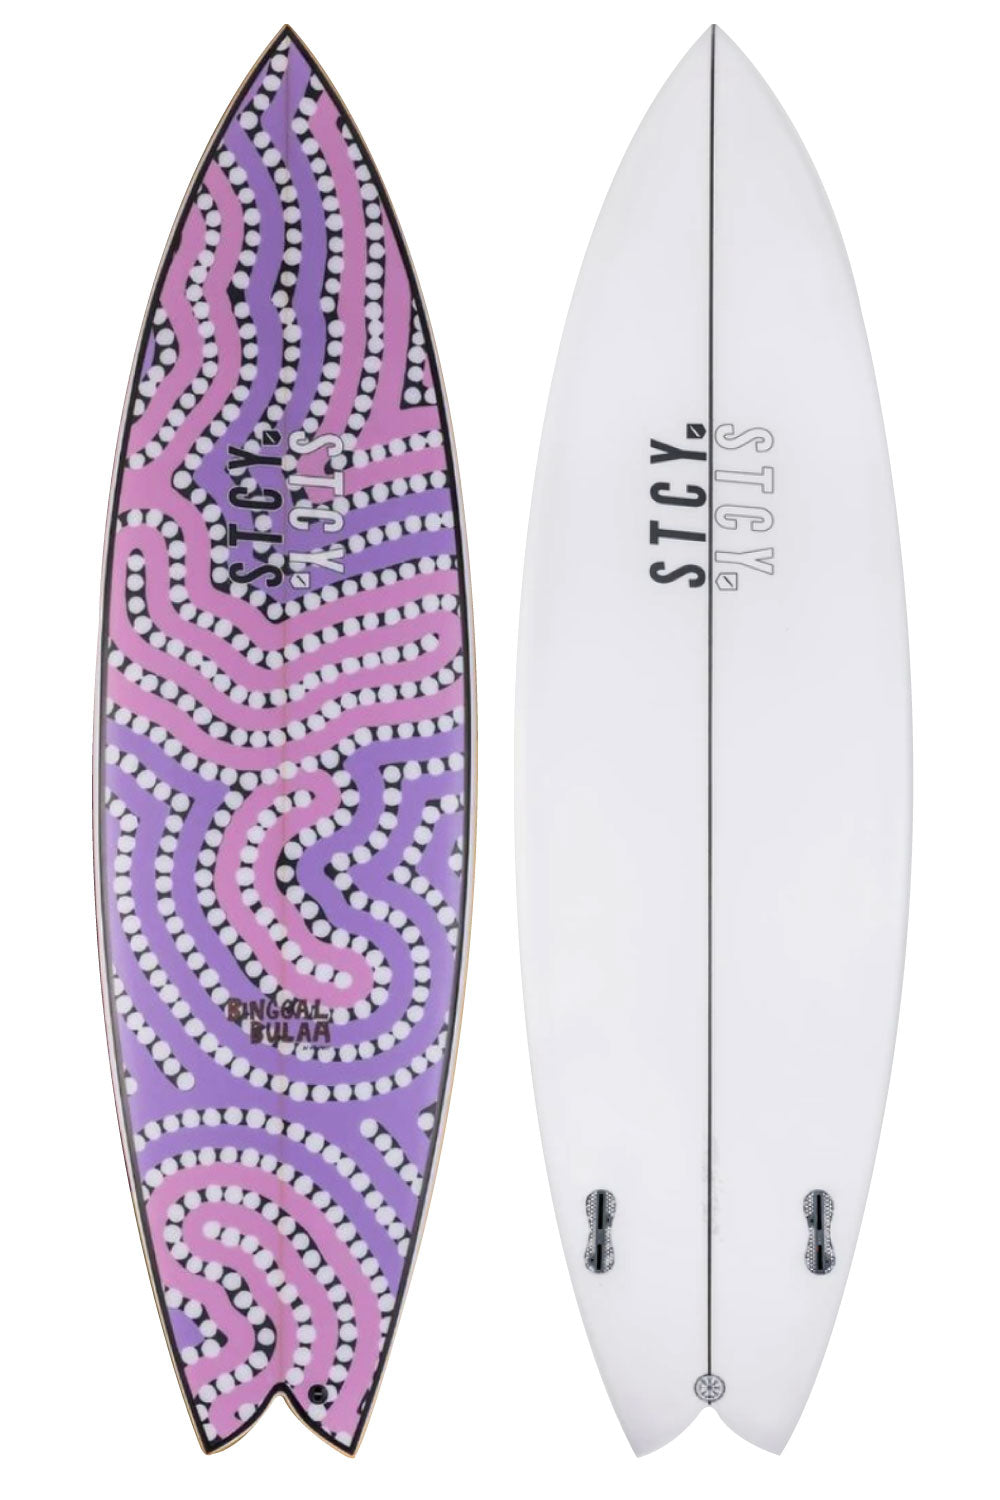 Stacey BINGAAL BULAA Surfboard by Otis Carey